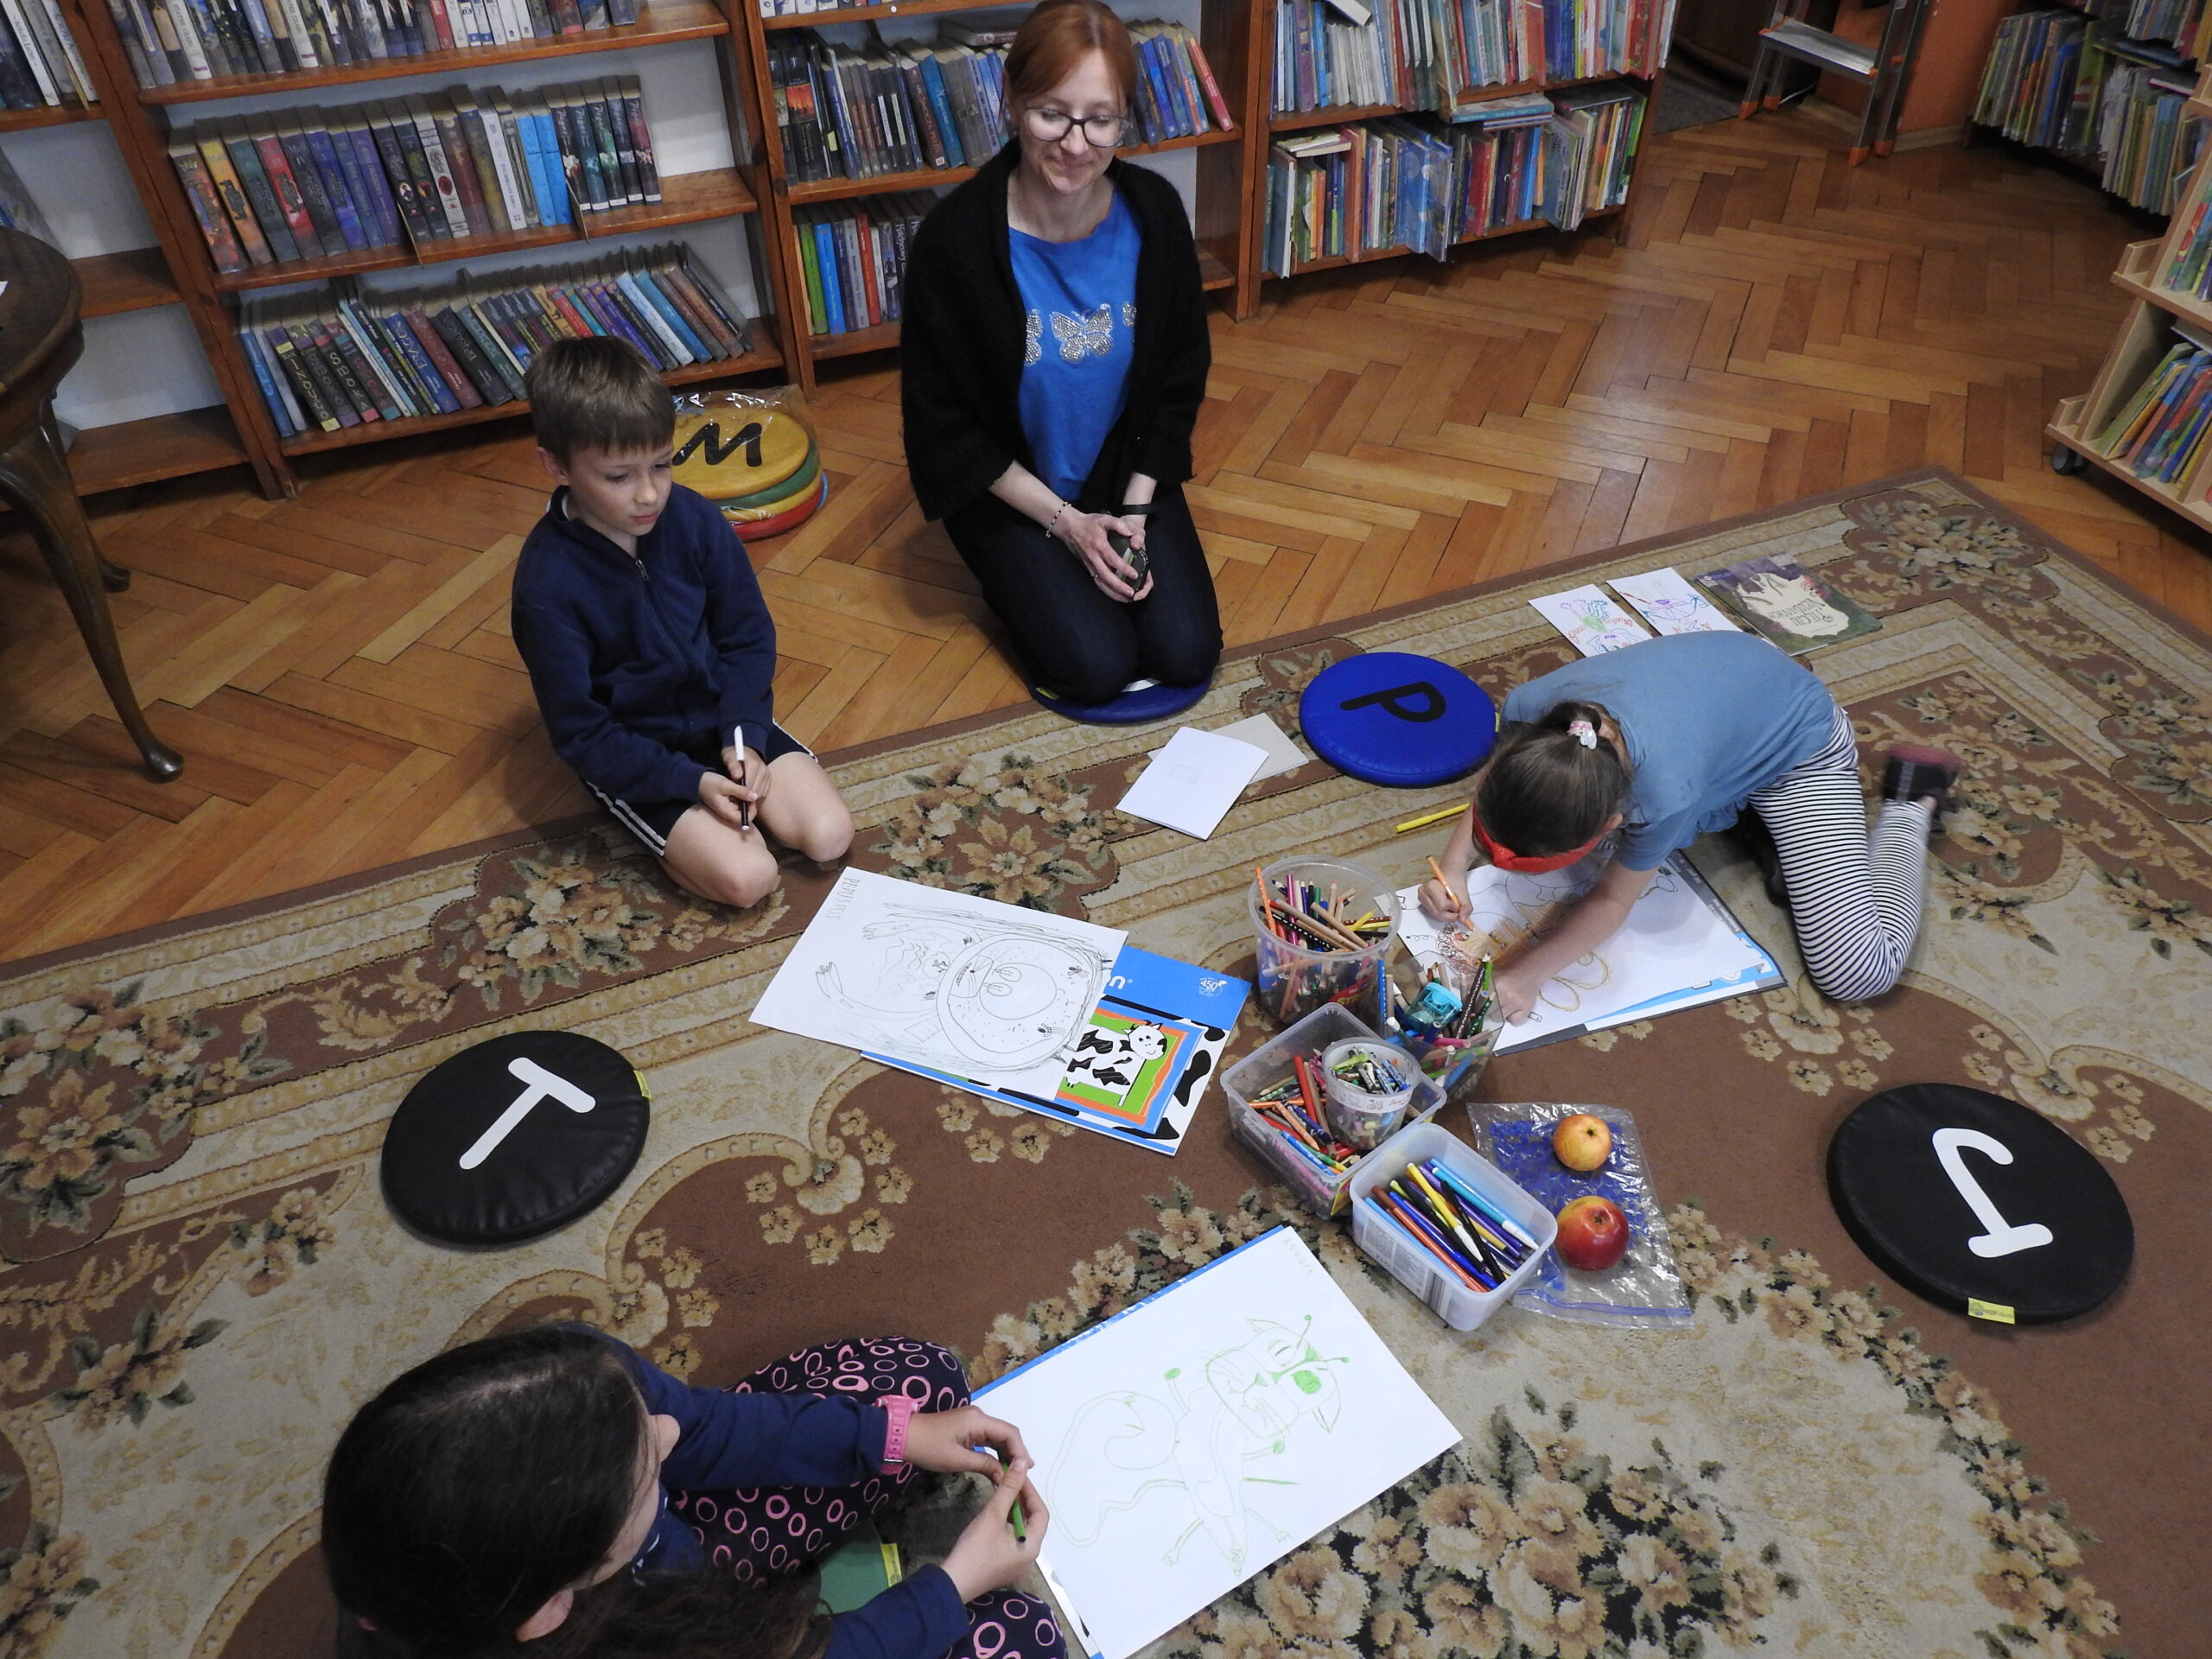 Troje dzieci oraz jedna osoba dorosła siedzą na dywanie i podłodze. Przed dziećmi znajdują się duże kartki, na których namalowane są potwory. Jedno dziecko pochyla się nad kartką i jeszcze coś dorysowuje. W tle regały z książkami.